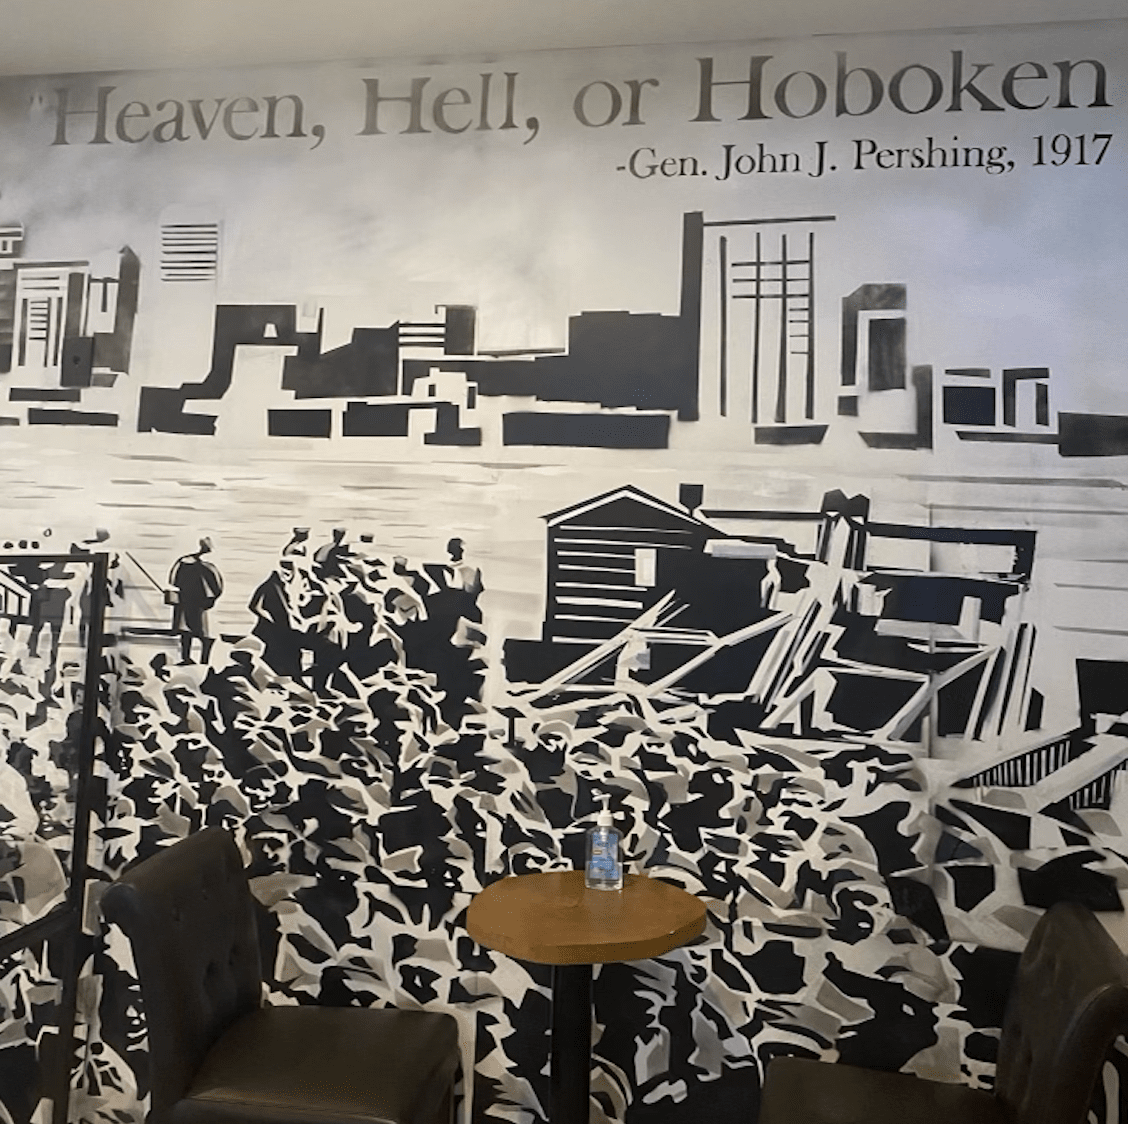 Veterans Center of Hoboken